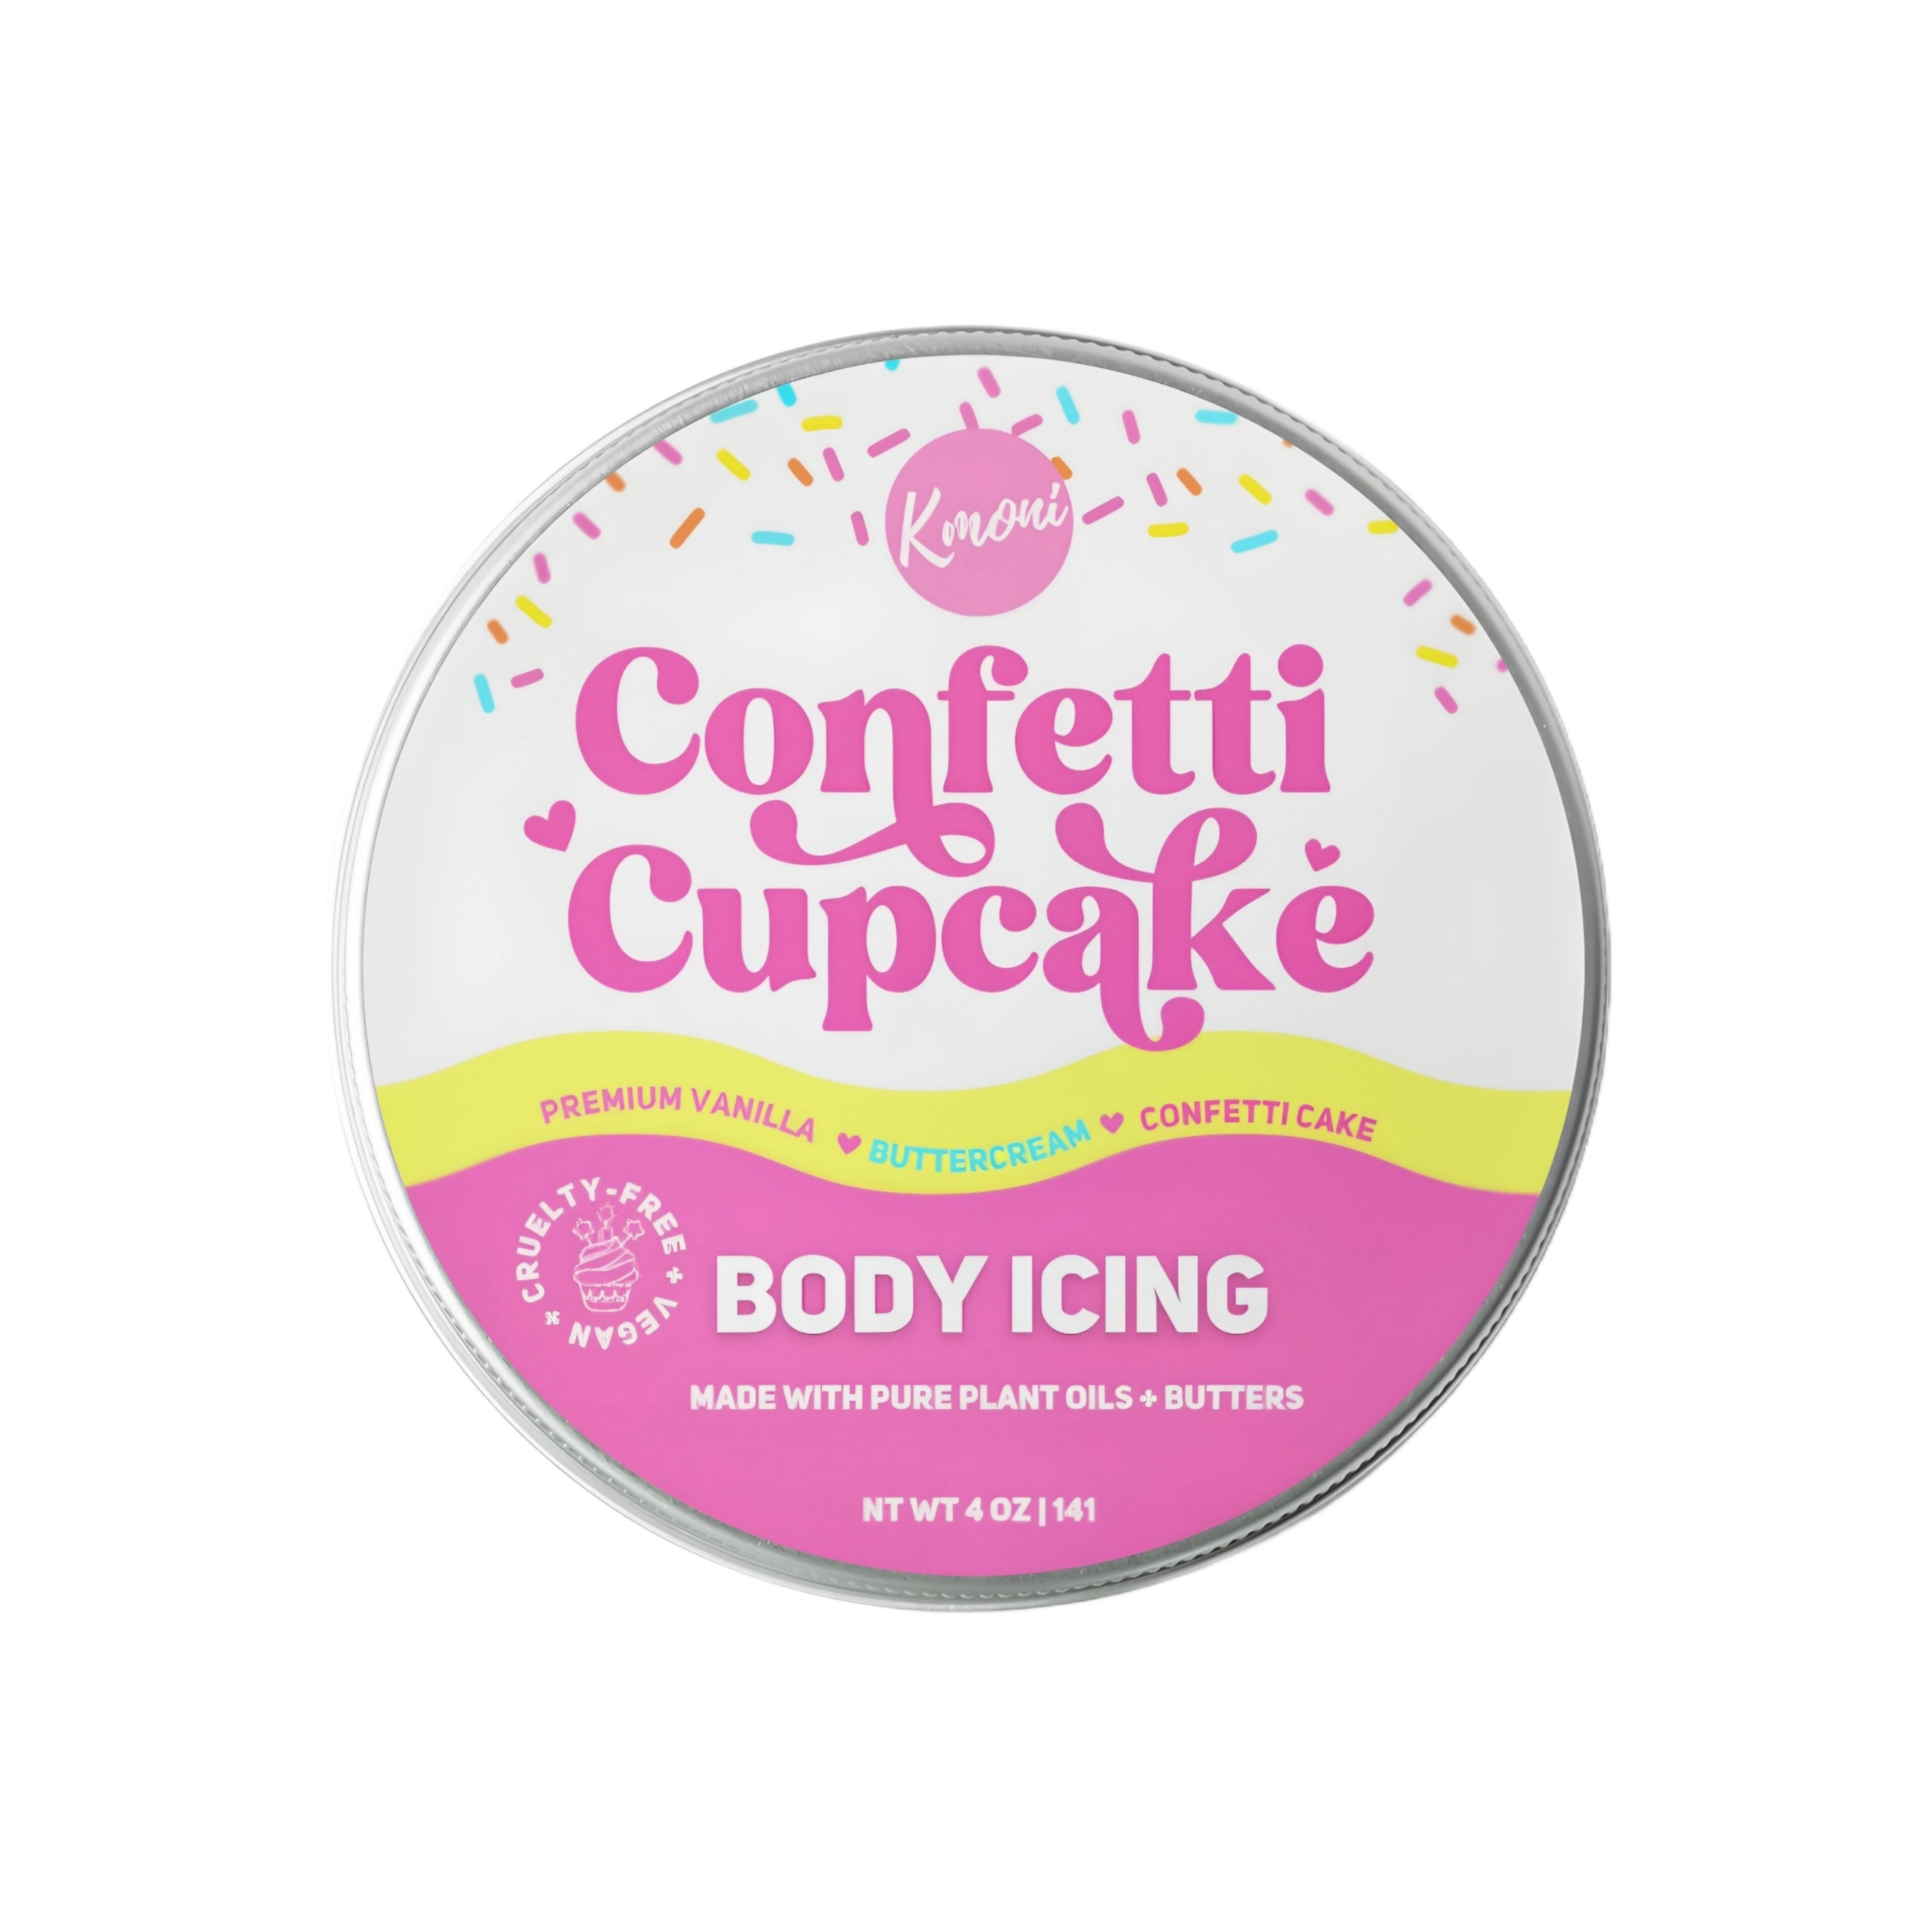 Confetti Cupcake Body Icing